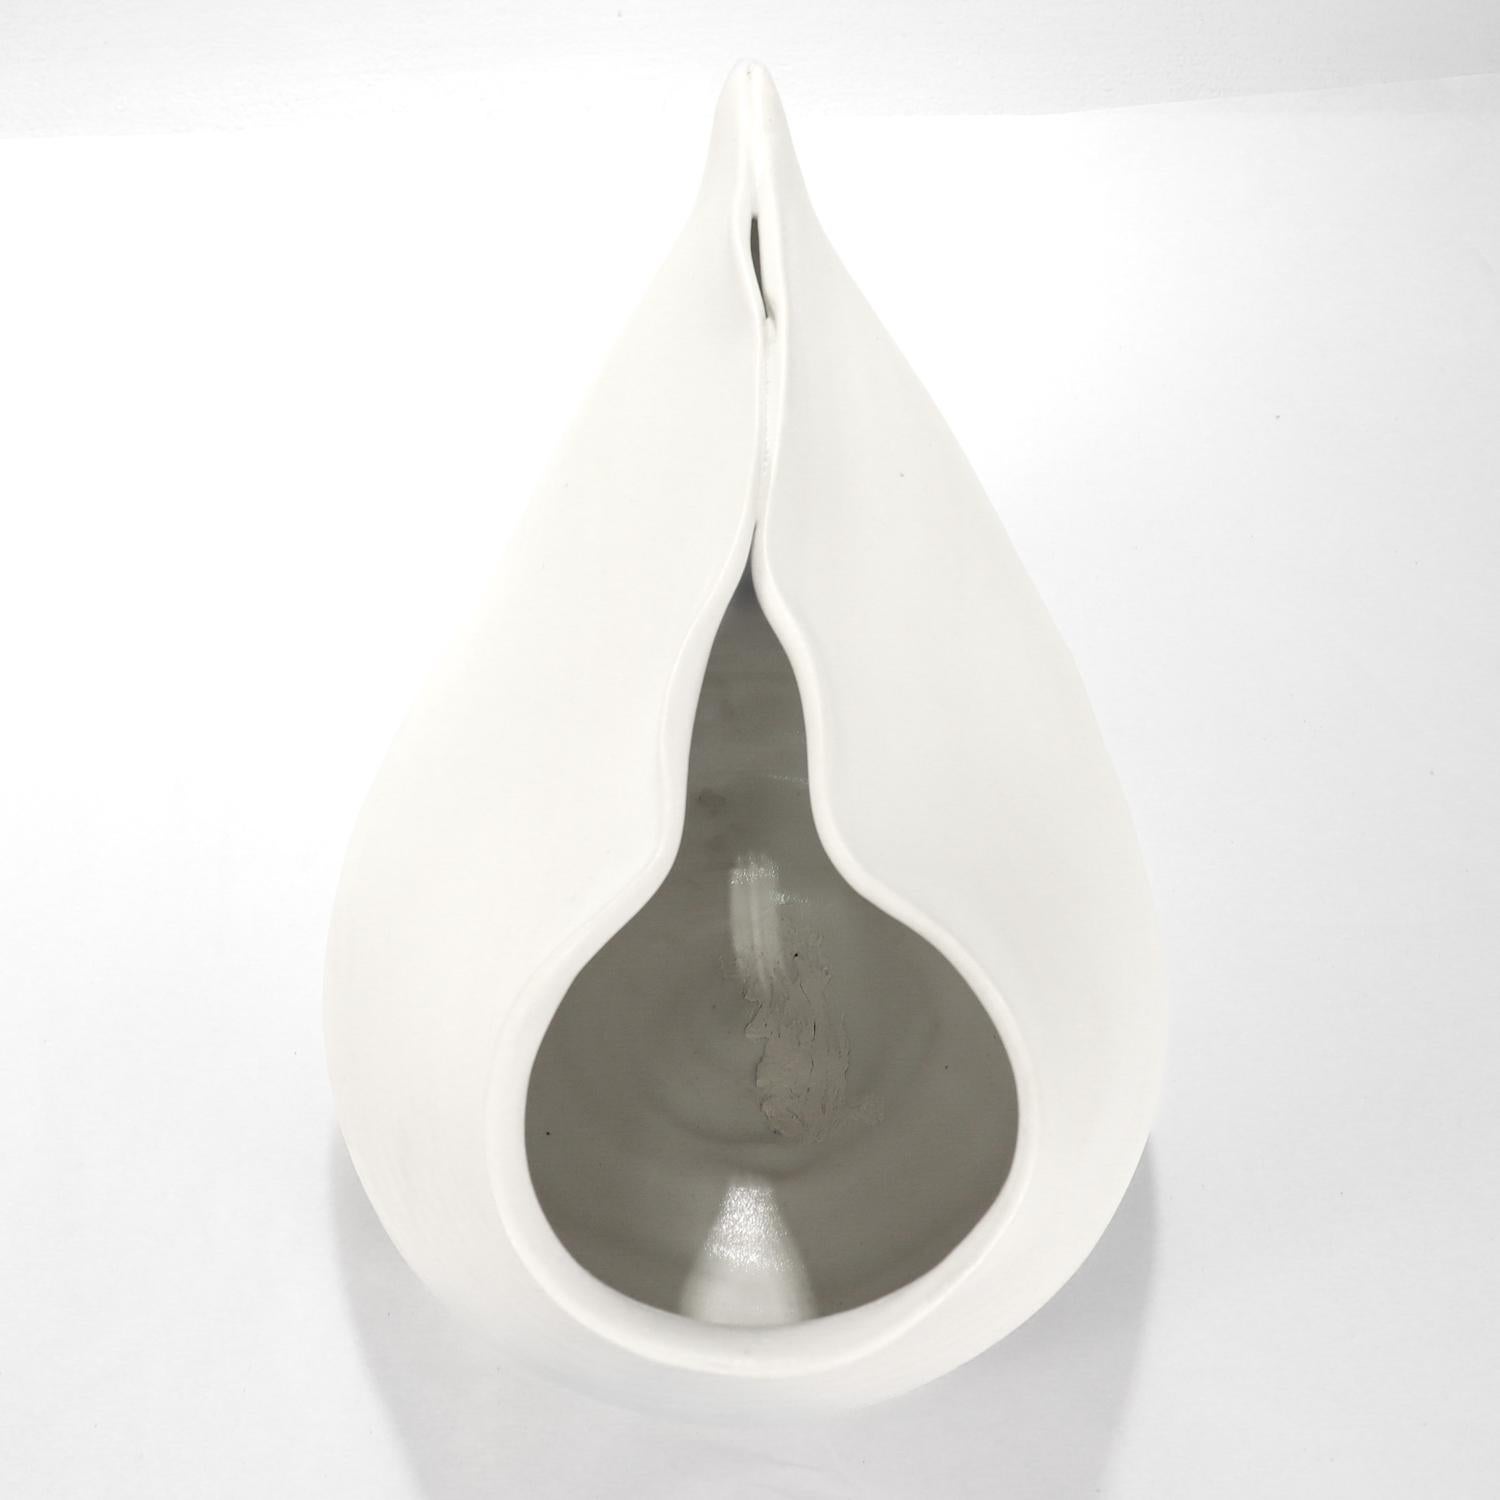 Donna Karan Lenox Signed Limited Edition Embrace Porcelain Vase / Vessel For Sale 3